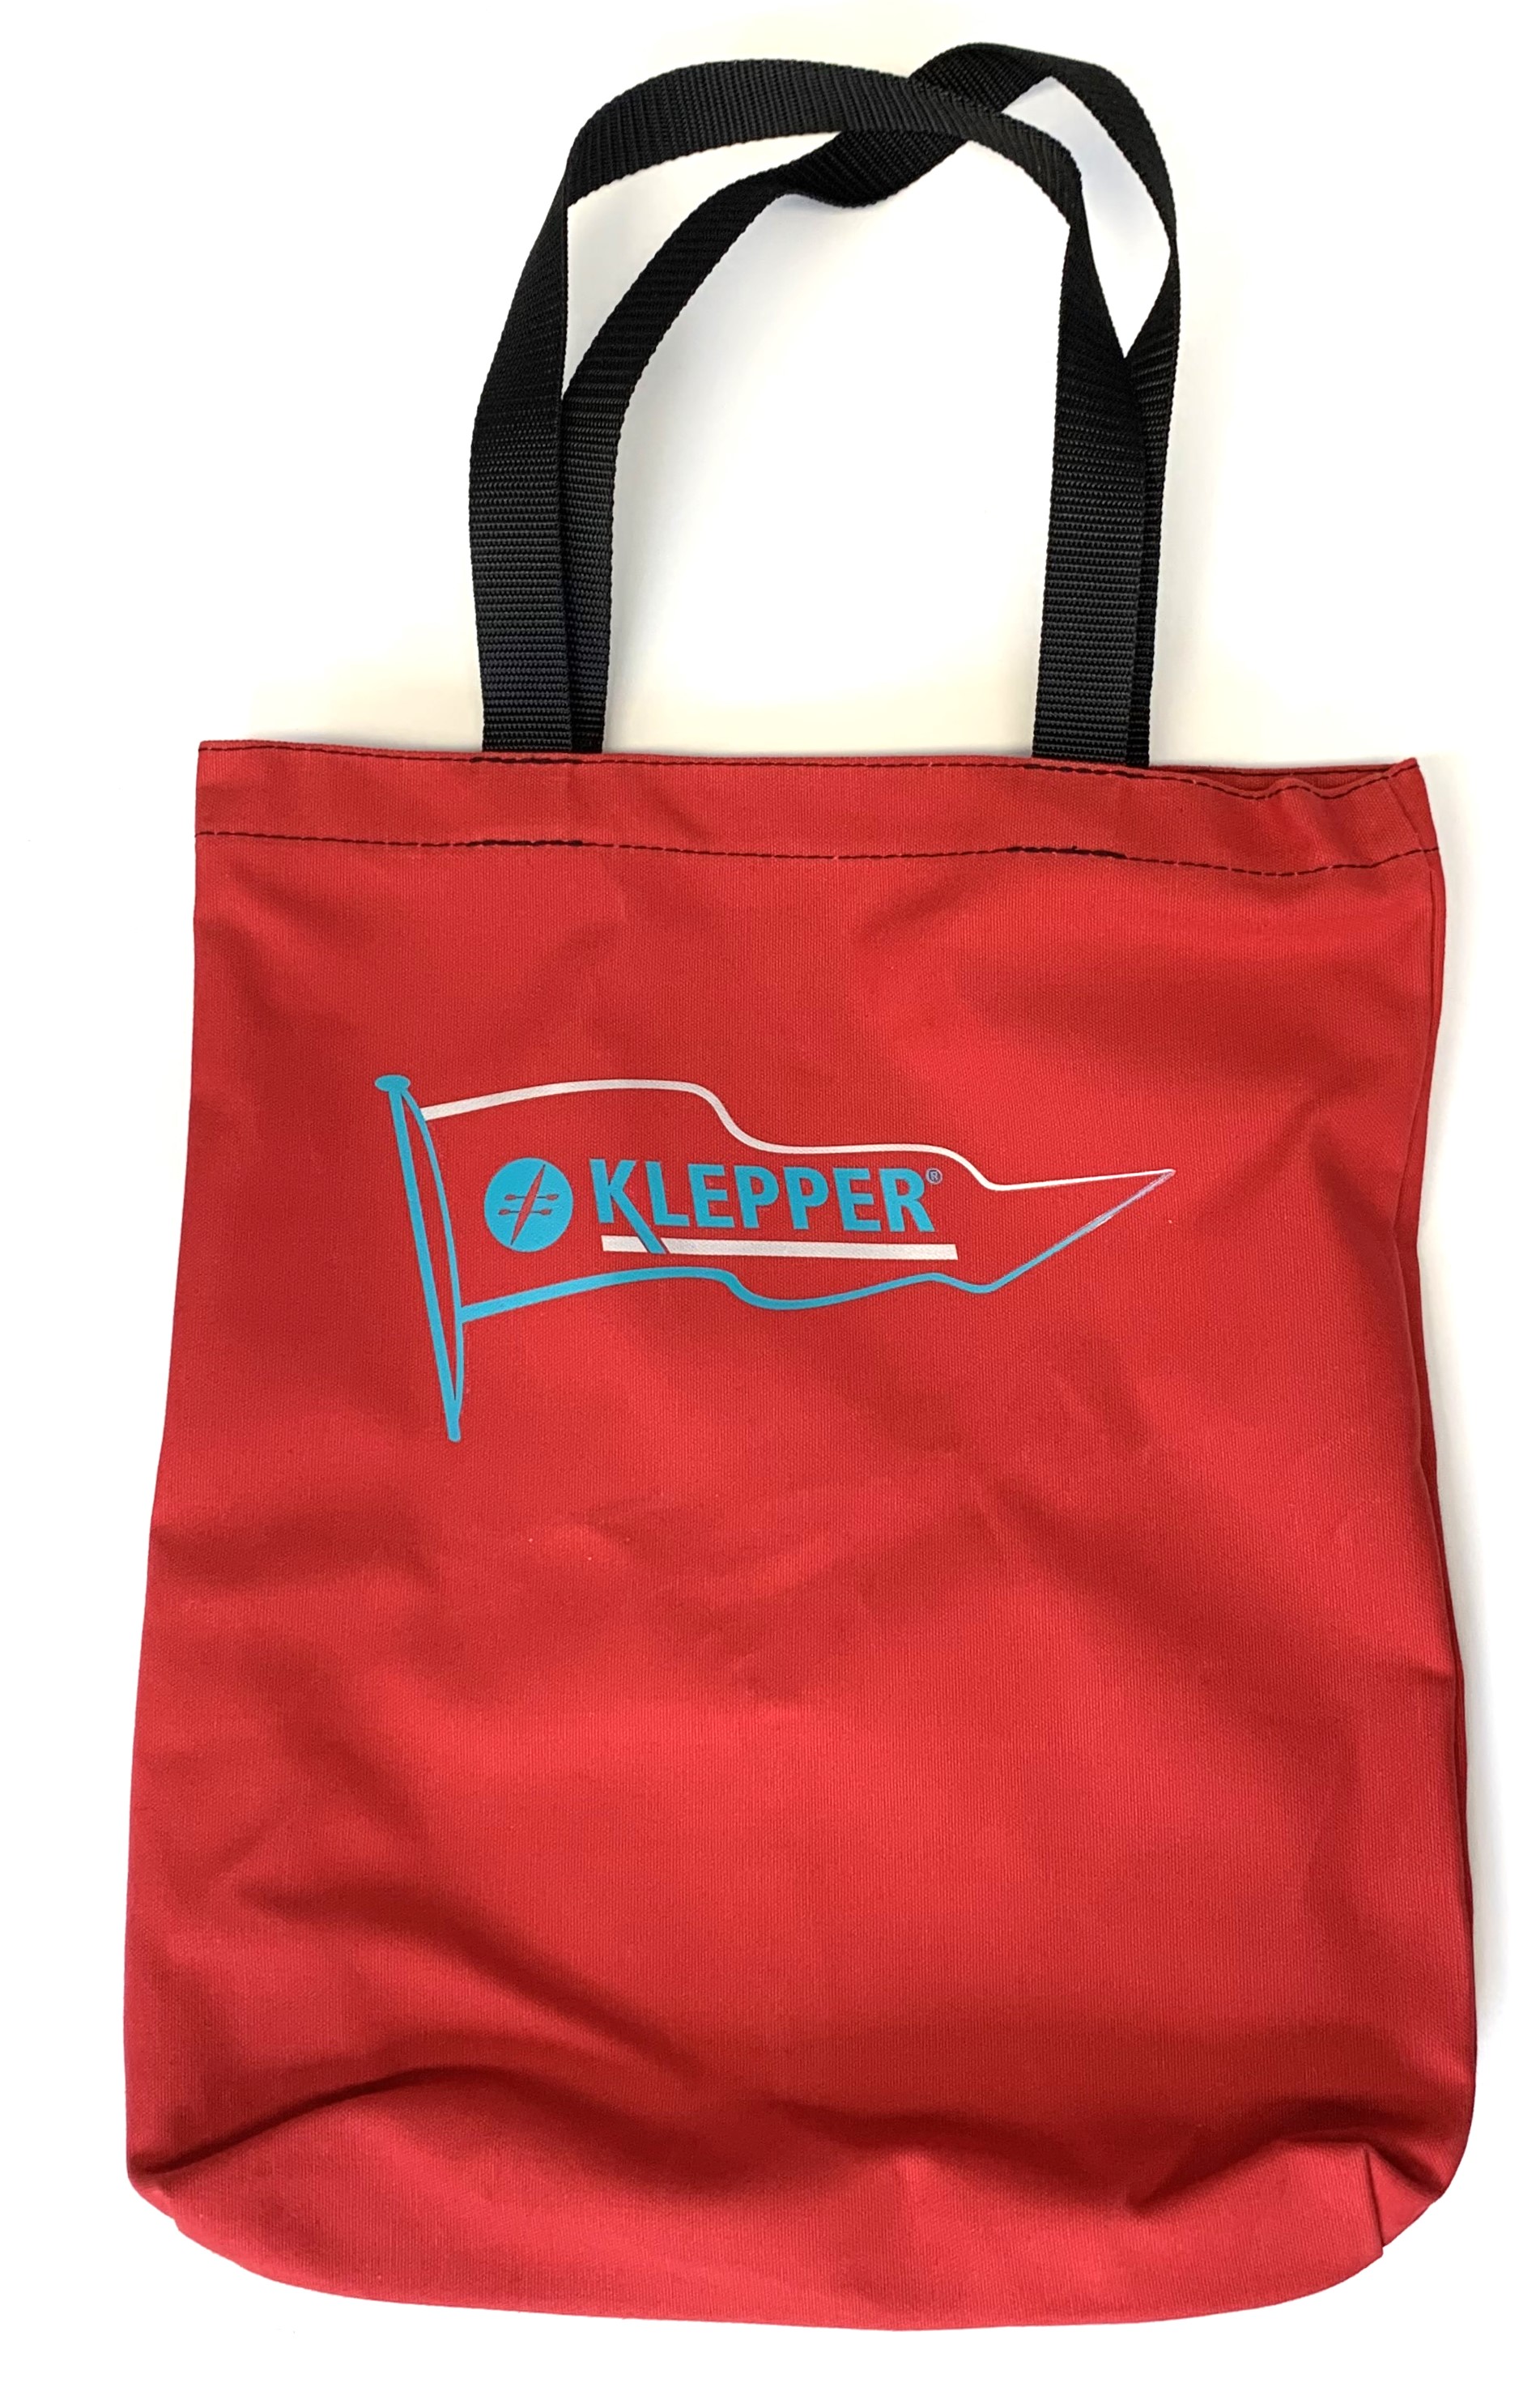 Schopping bag, KLEPPER, cotton red